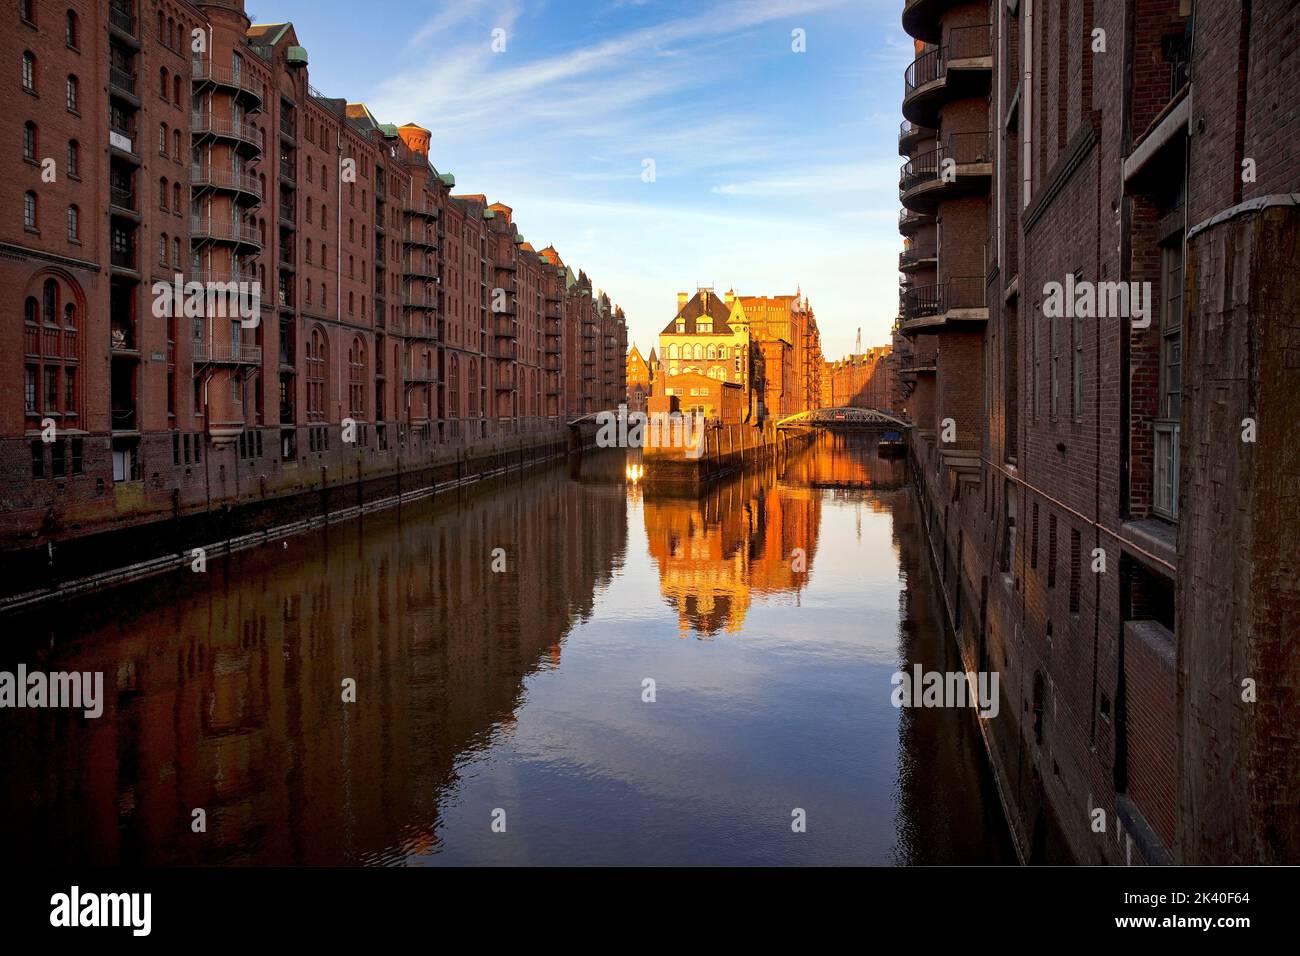 Castello ormeggiato nel quartiere dei magazzini di Amburgo all'alba, patrimonio dell'umanità dell'UNESCO, visto dal ponte Poggenmuehlen, Germania, Amburgo Foto Stock